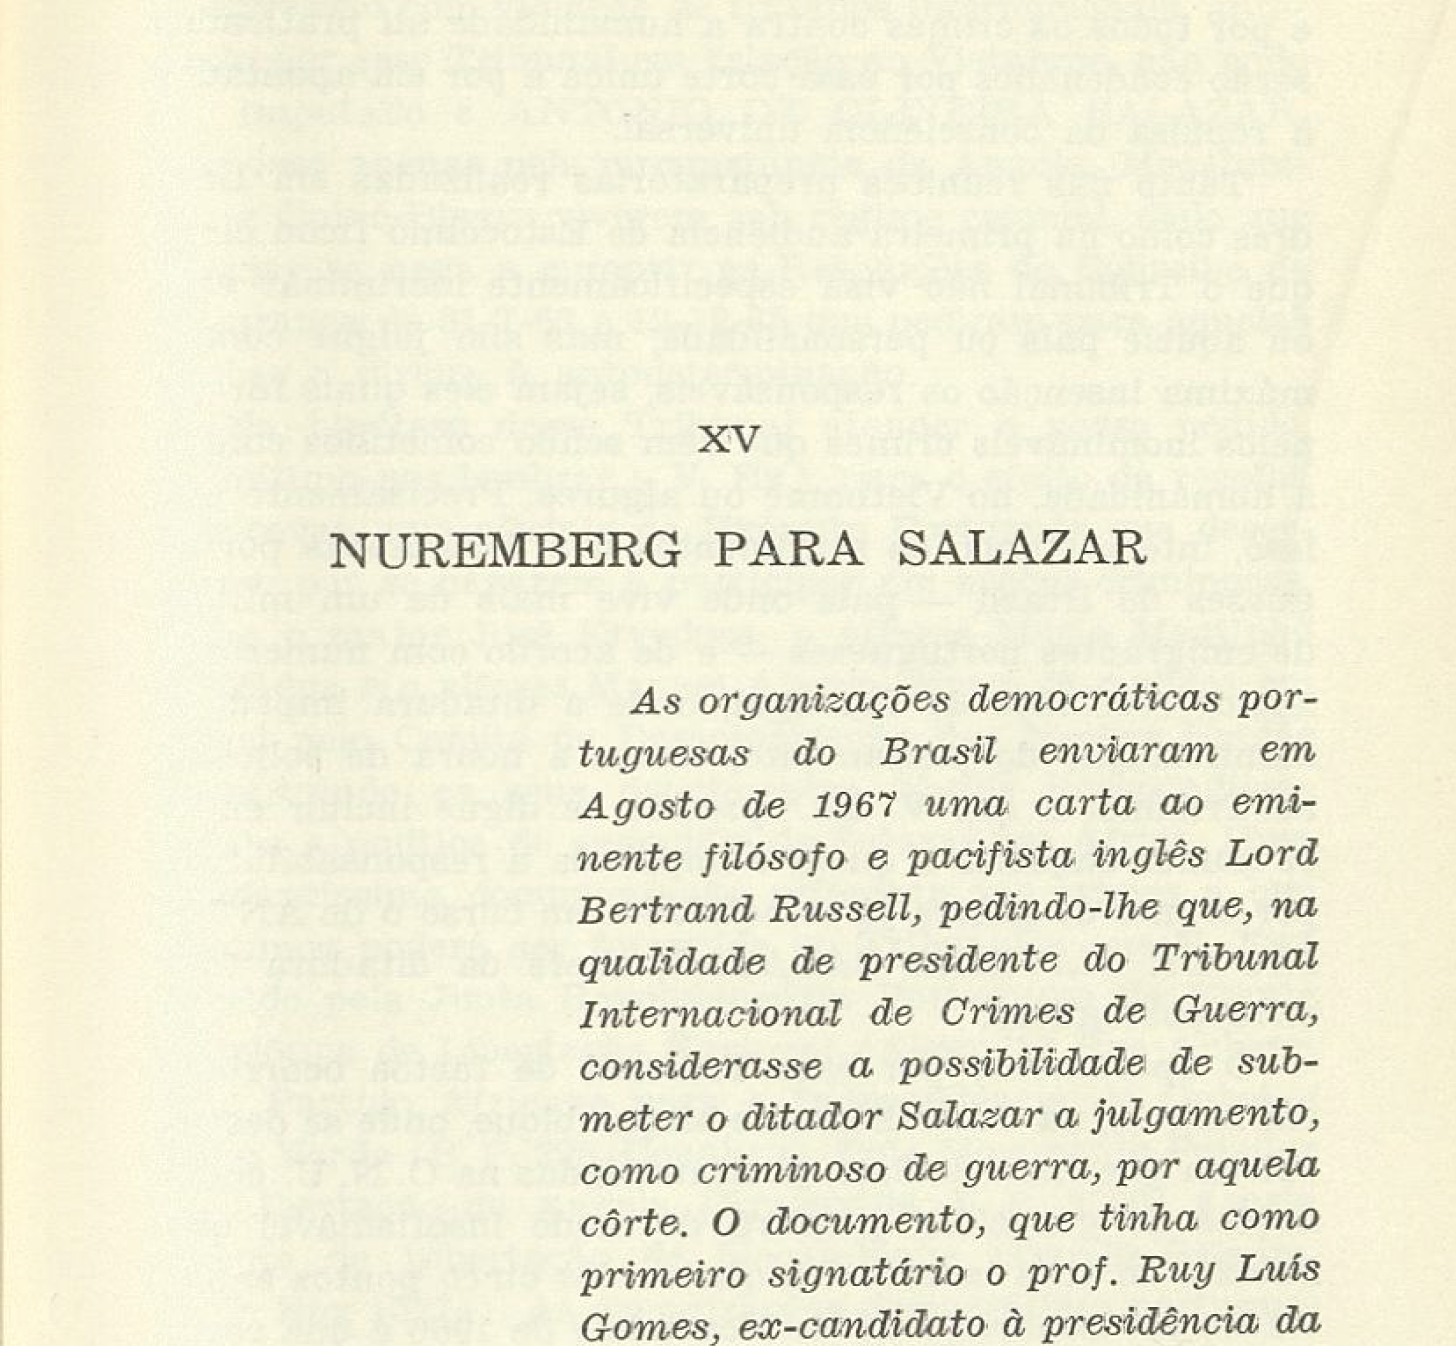 Nuremberg para Salazar 153-156